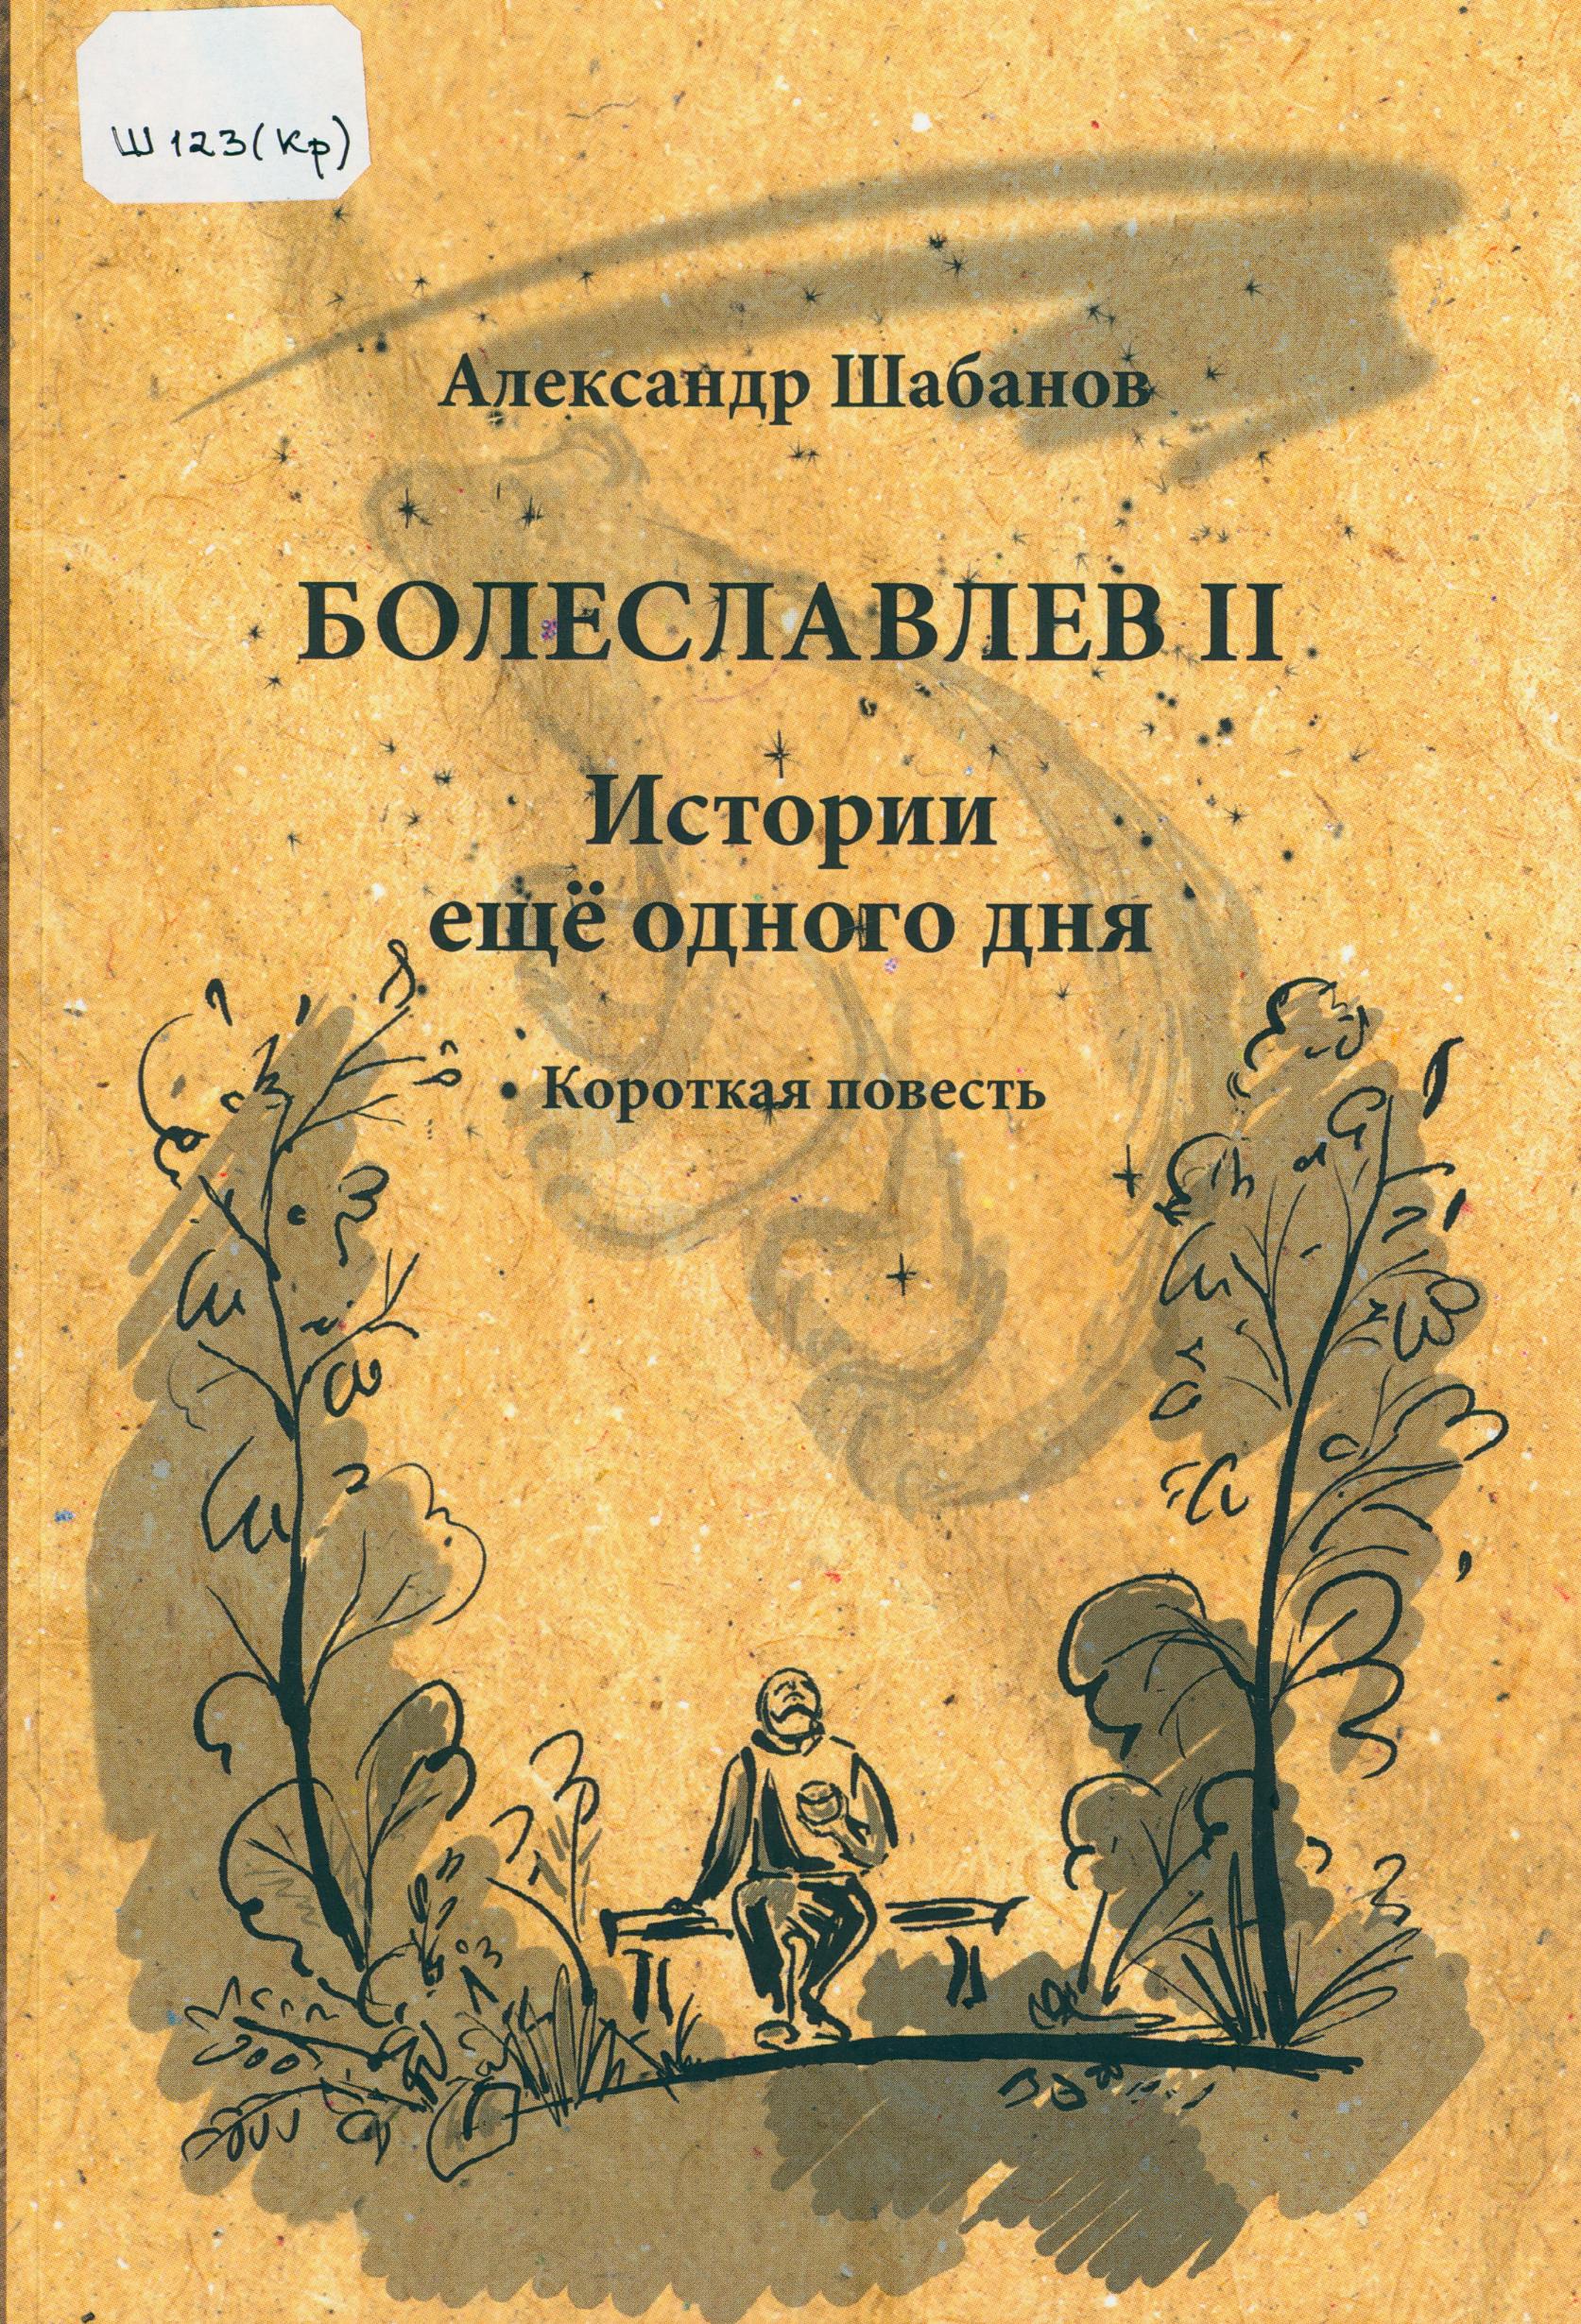 Шабанов А. Ю. Болеславлев II